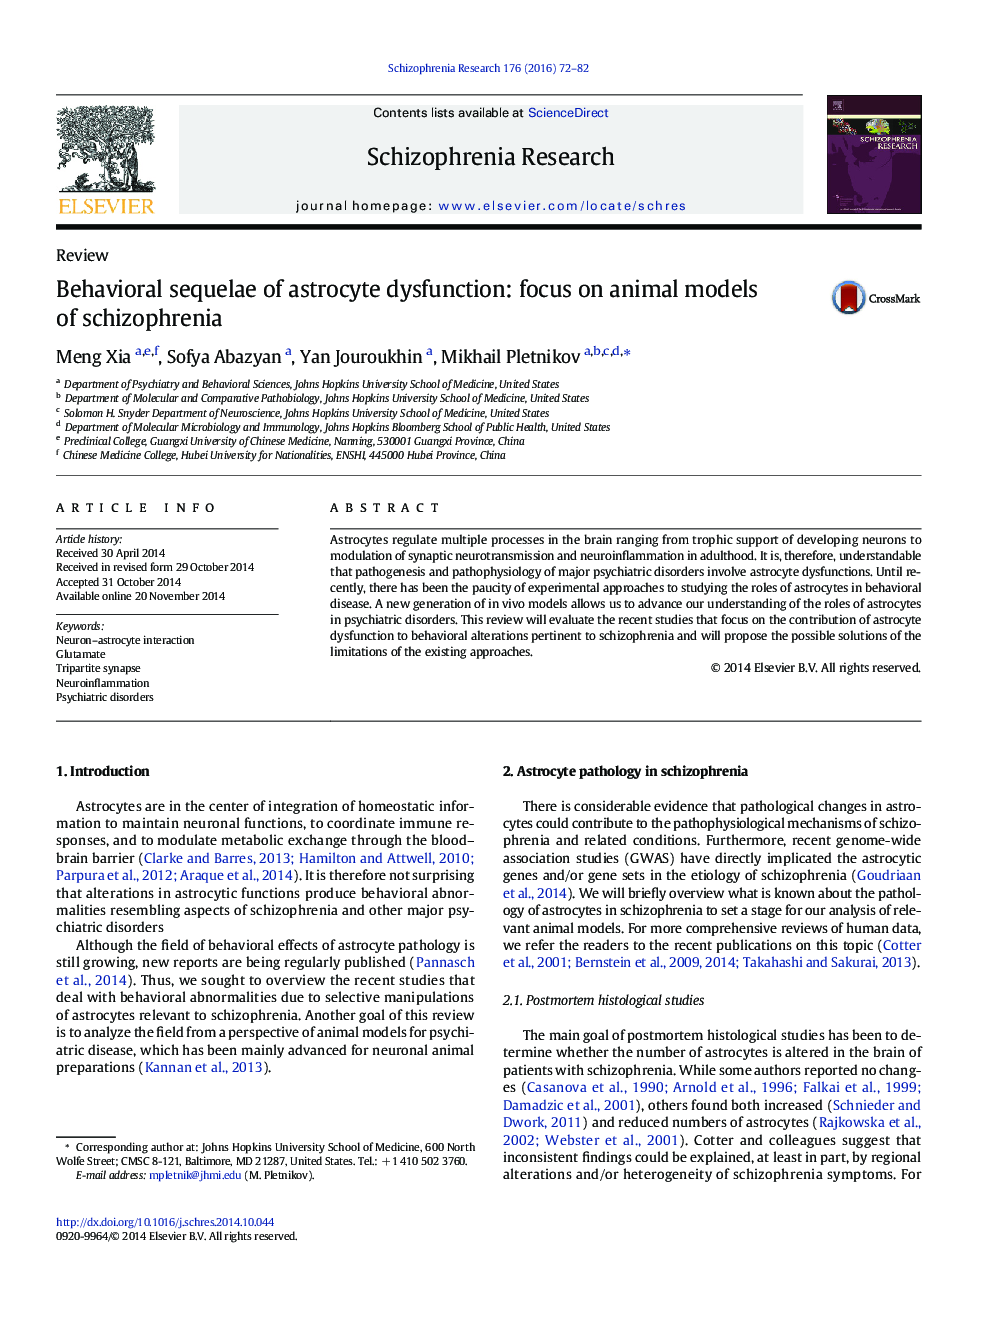 عوارض رفتاری اختلال آستروسیت: تمرکز بر روی مدل های حیوانی اسکیزوفرنی